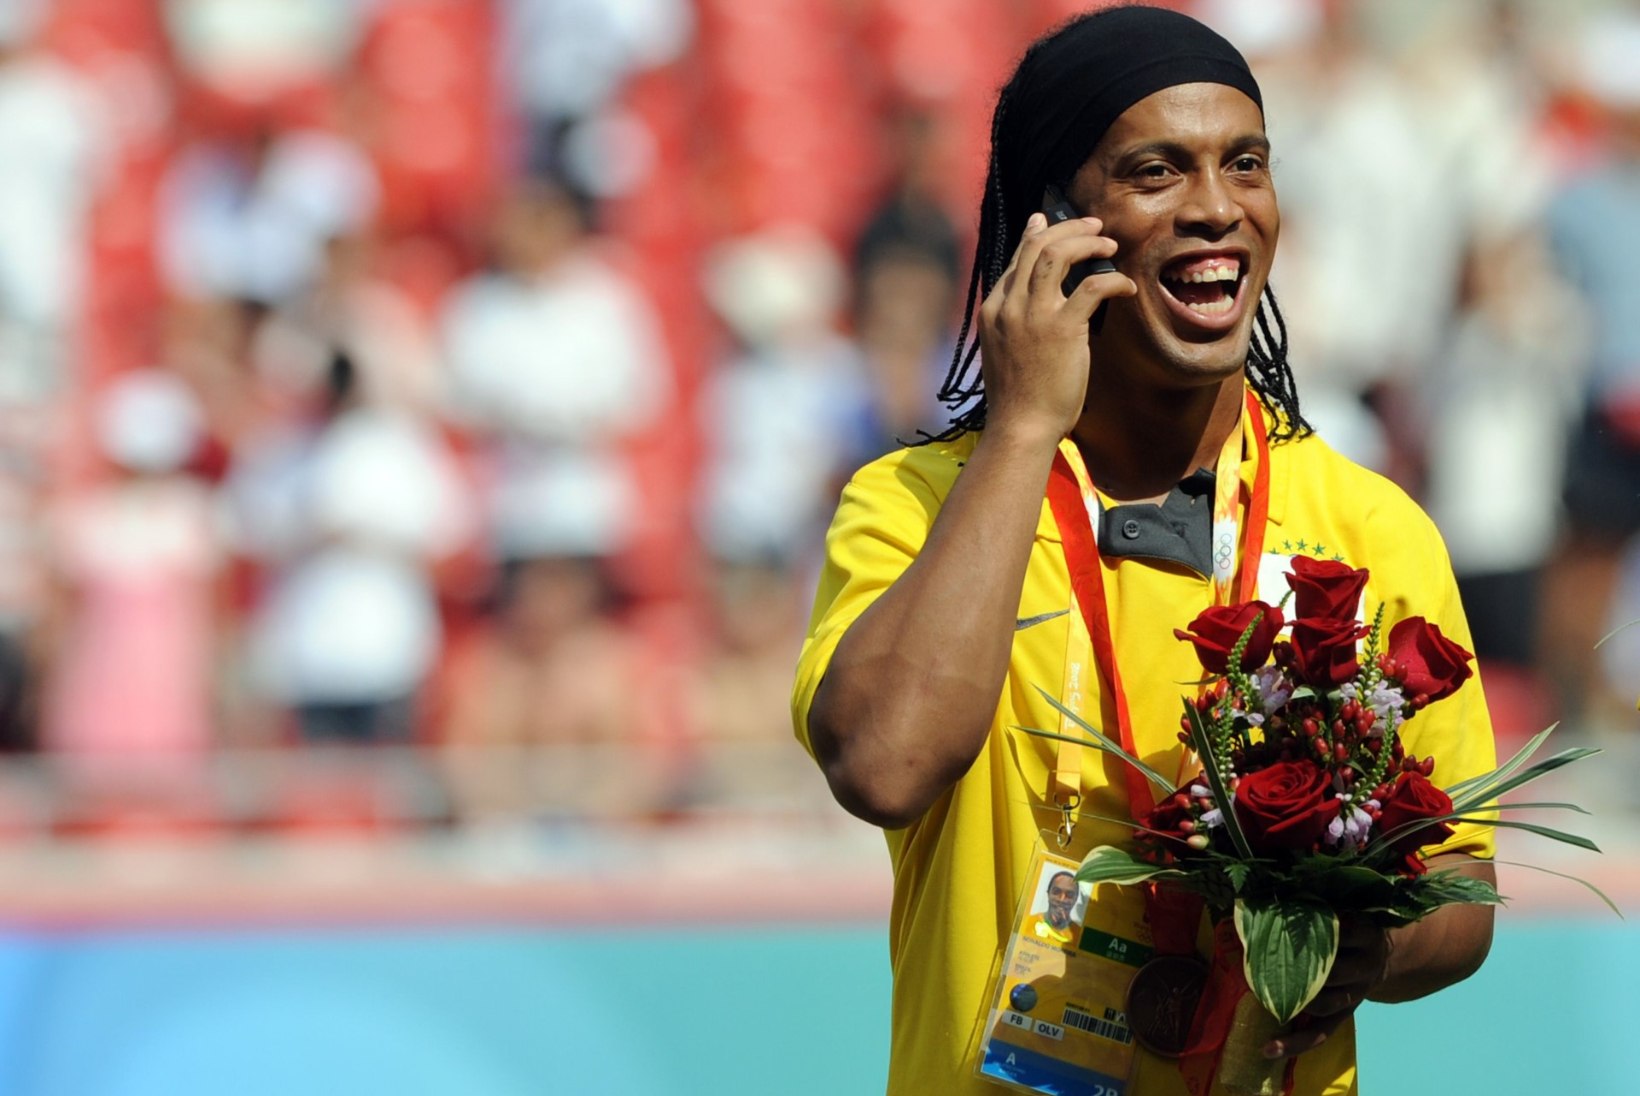 VÕTA, AGA PANE TAGASI! Ronaldinho sadadest miljonitest on alles vaid 6 eurot